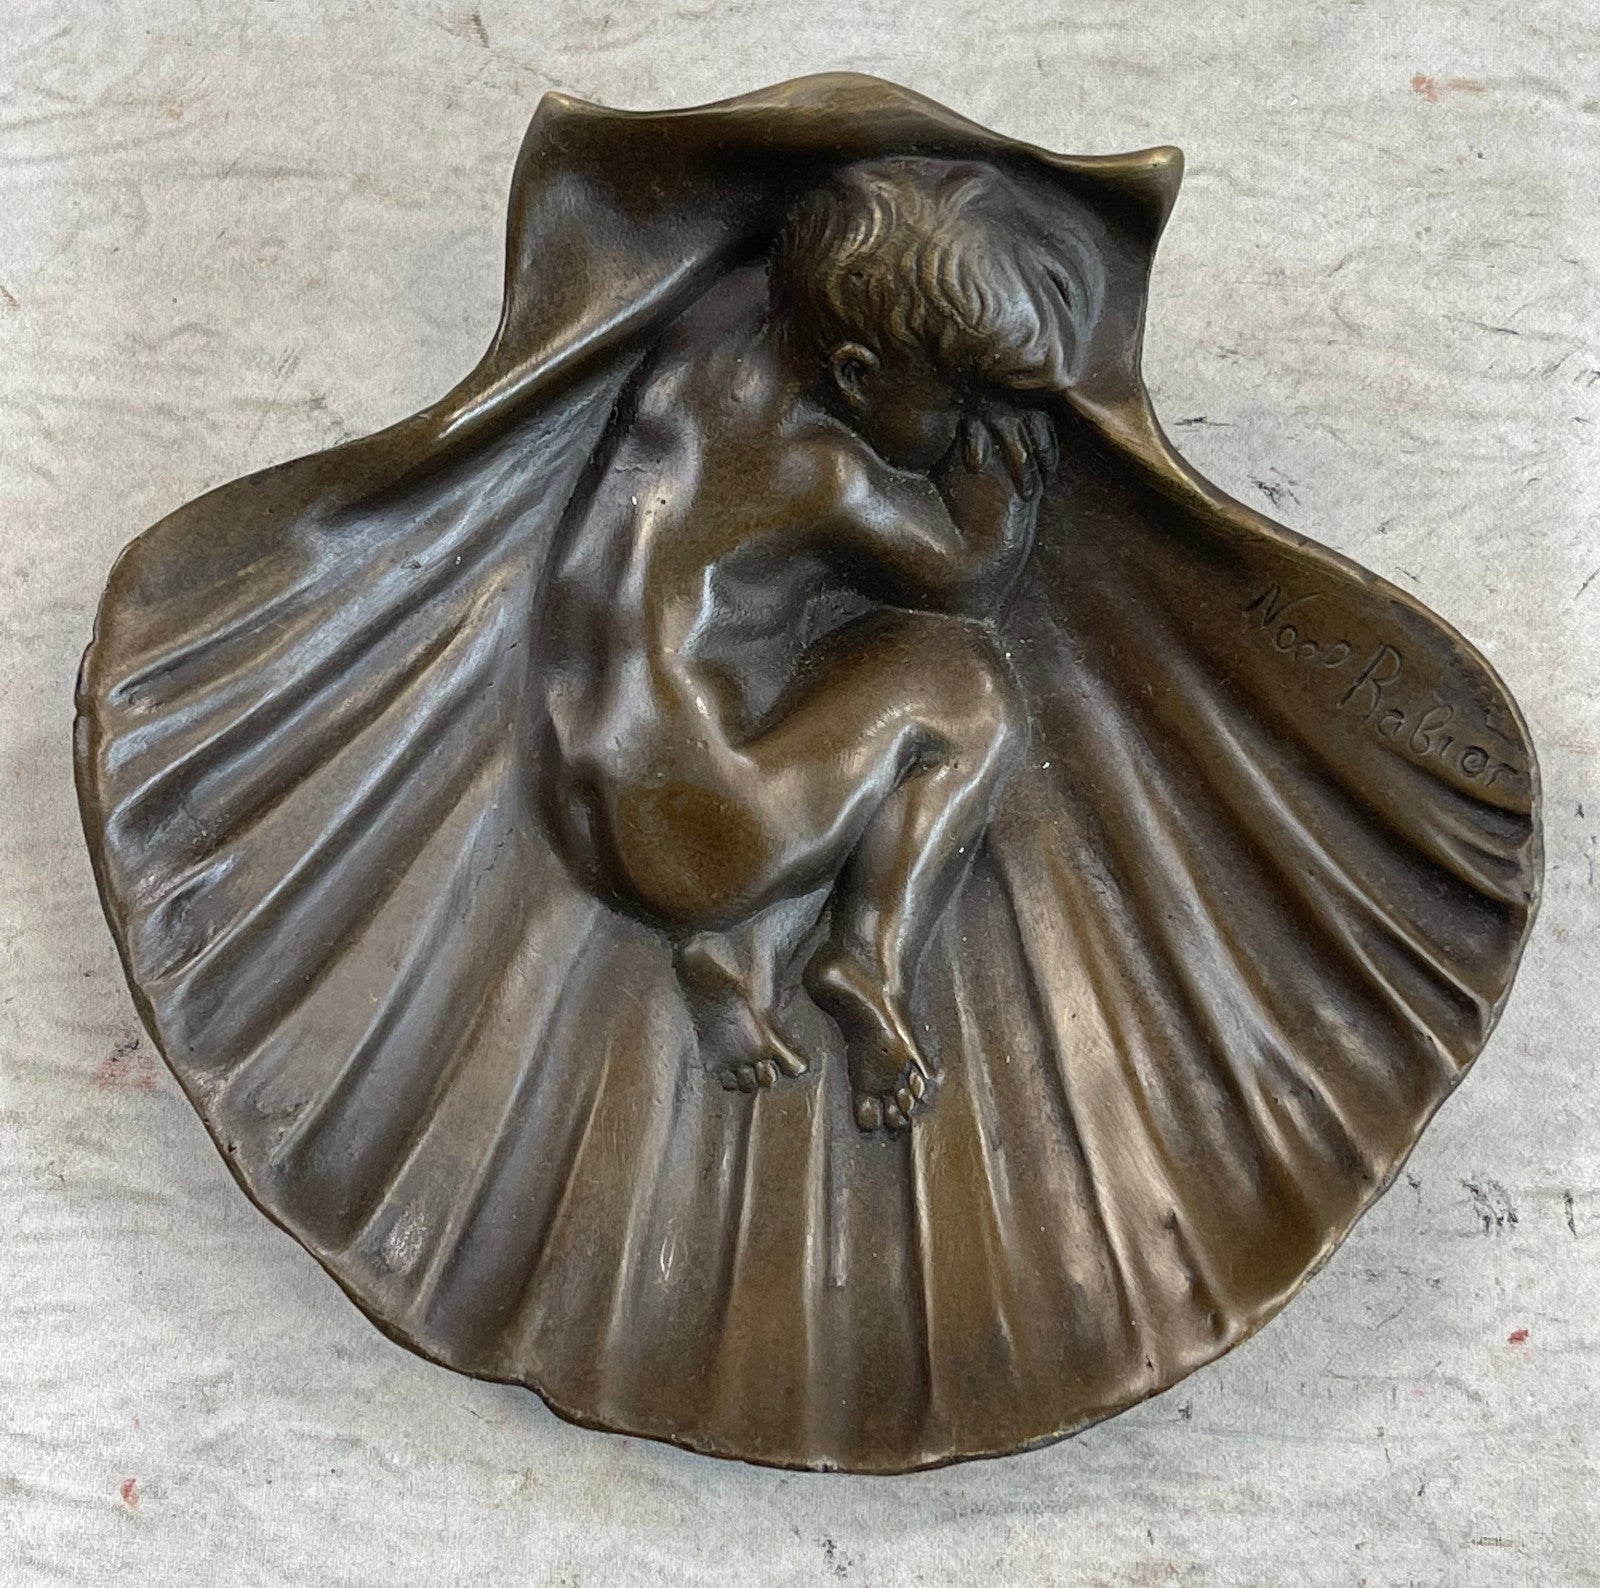 Art Deco Erotic Nude Boy Ashtray Bronze Sculpture Figurine Figure Decor Figure